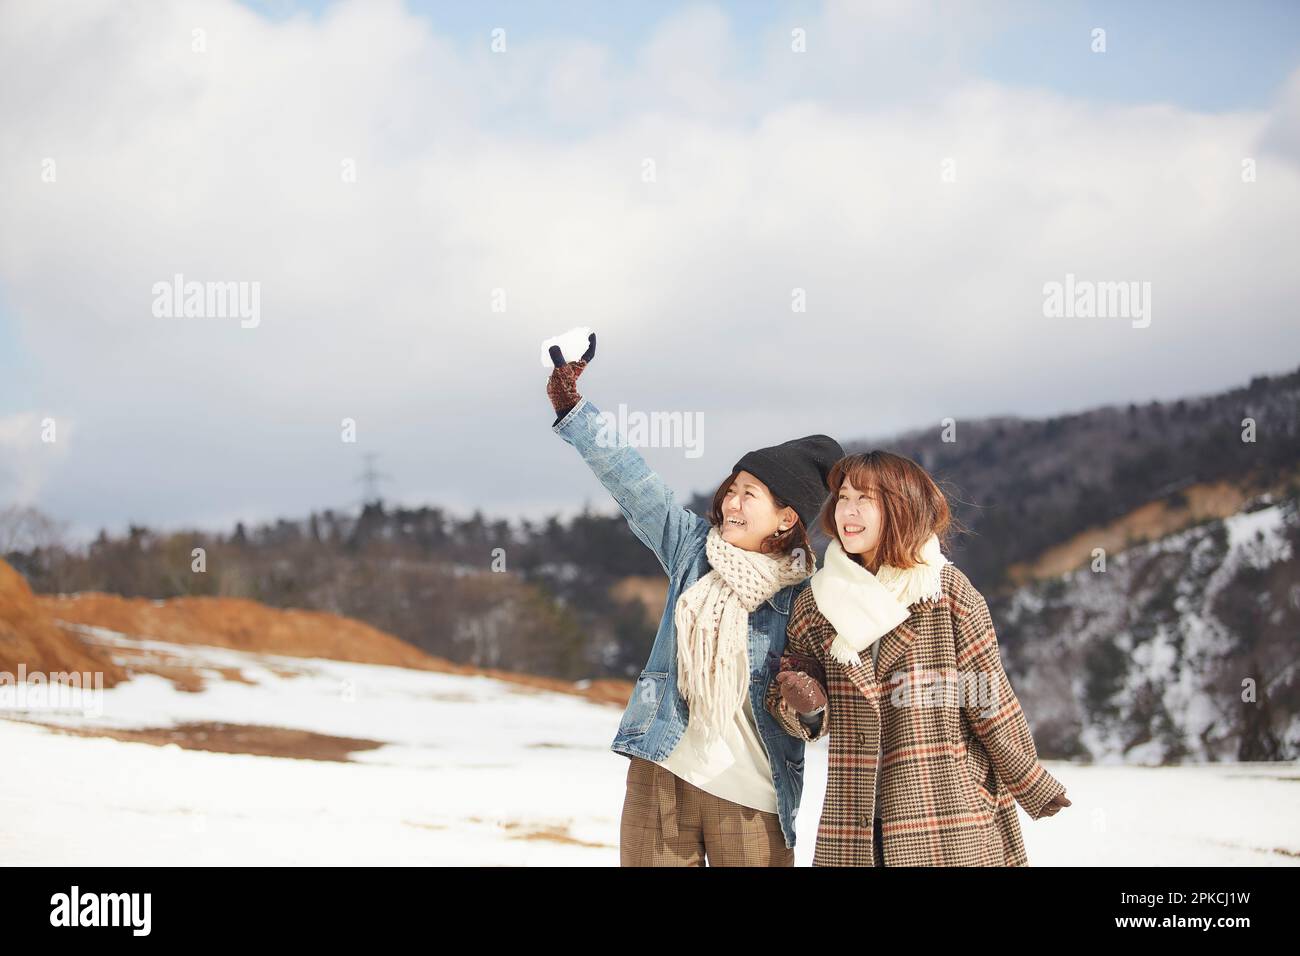 Zwei Frauen, die auf einem verschneiten Platz spielen Stockfoto